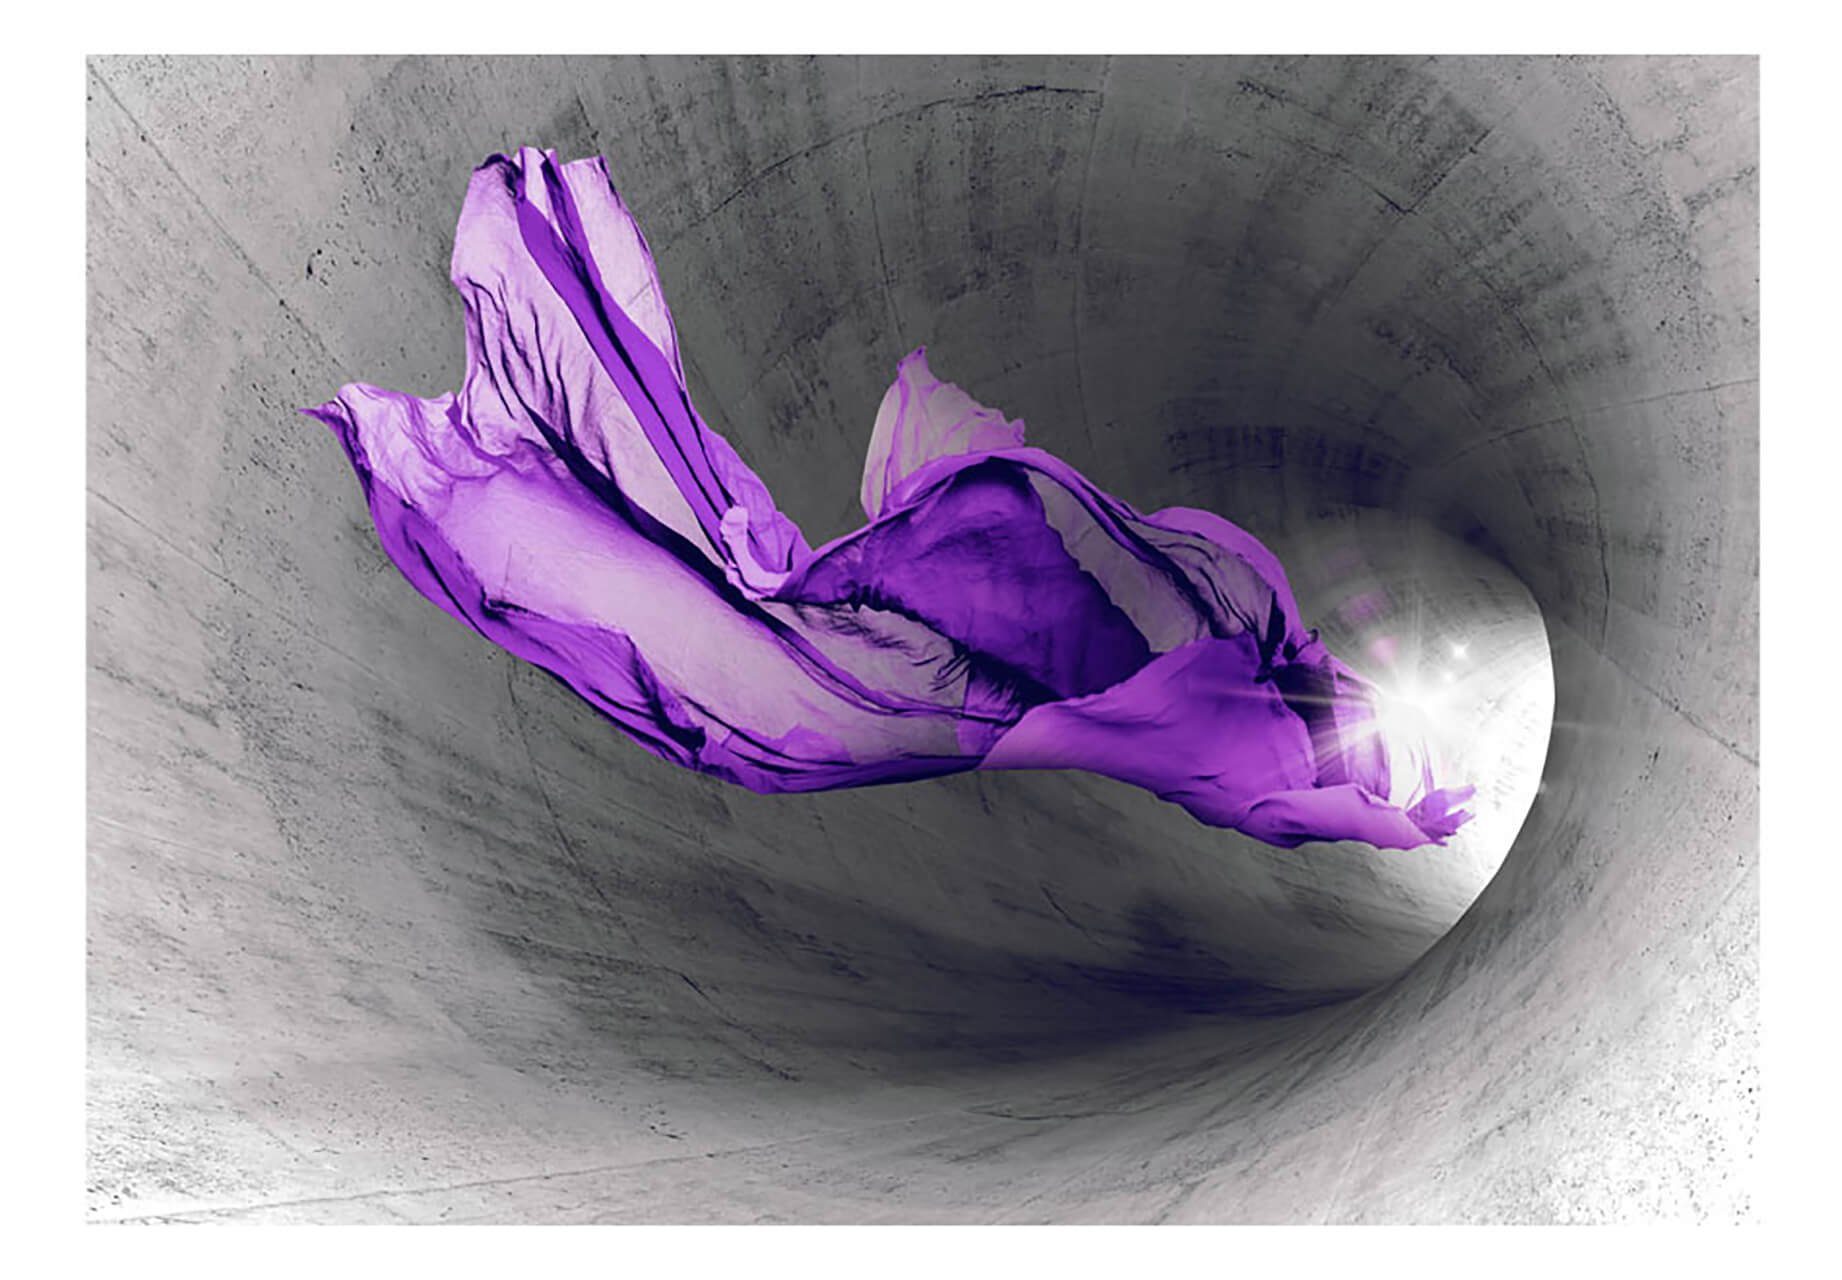 KUNSTLOFT Vliestapete Violet Mystery 1.5x1.05 m, halb-matt, lichtbeständige Design Tapete